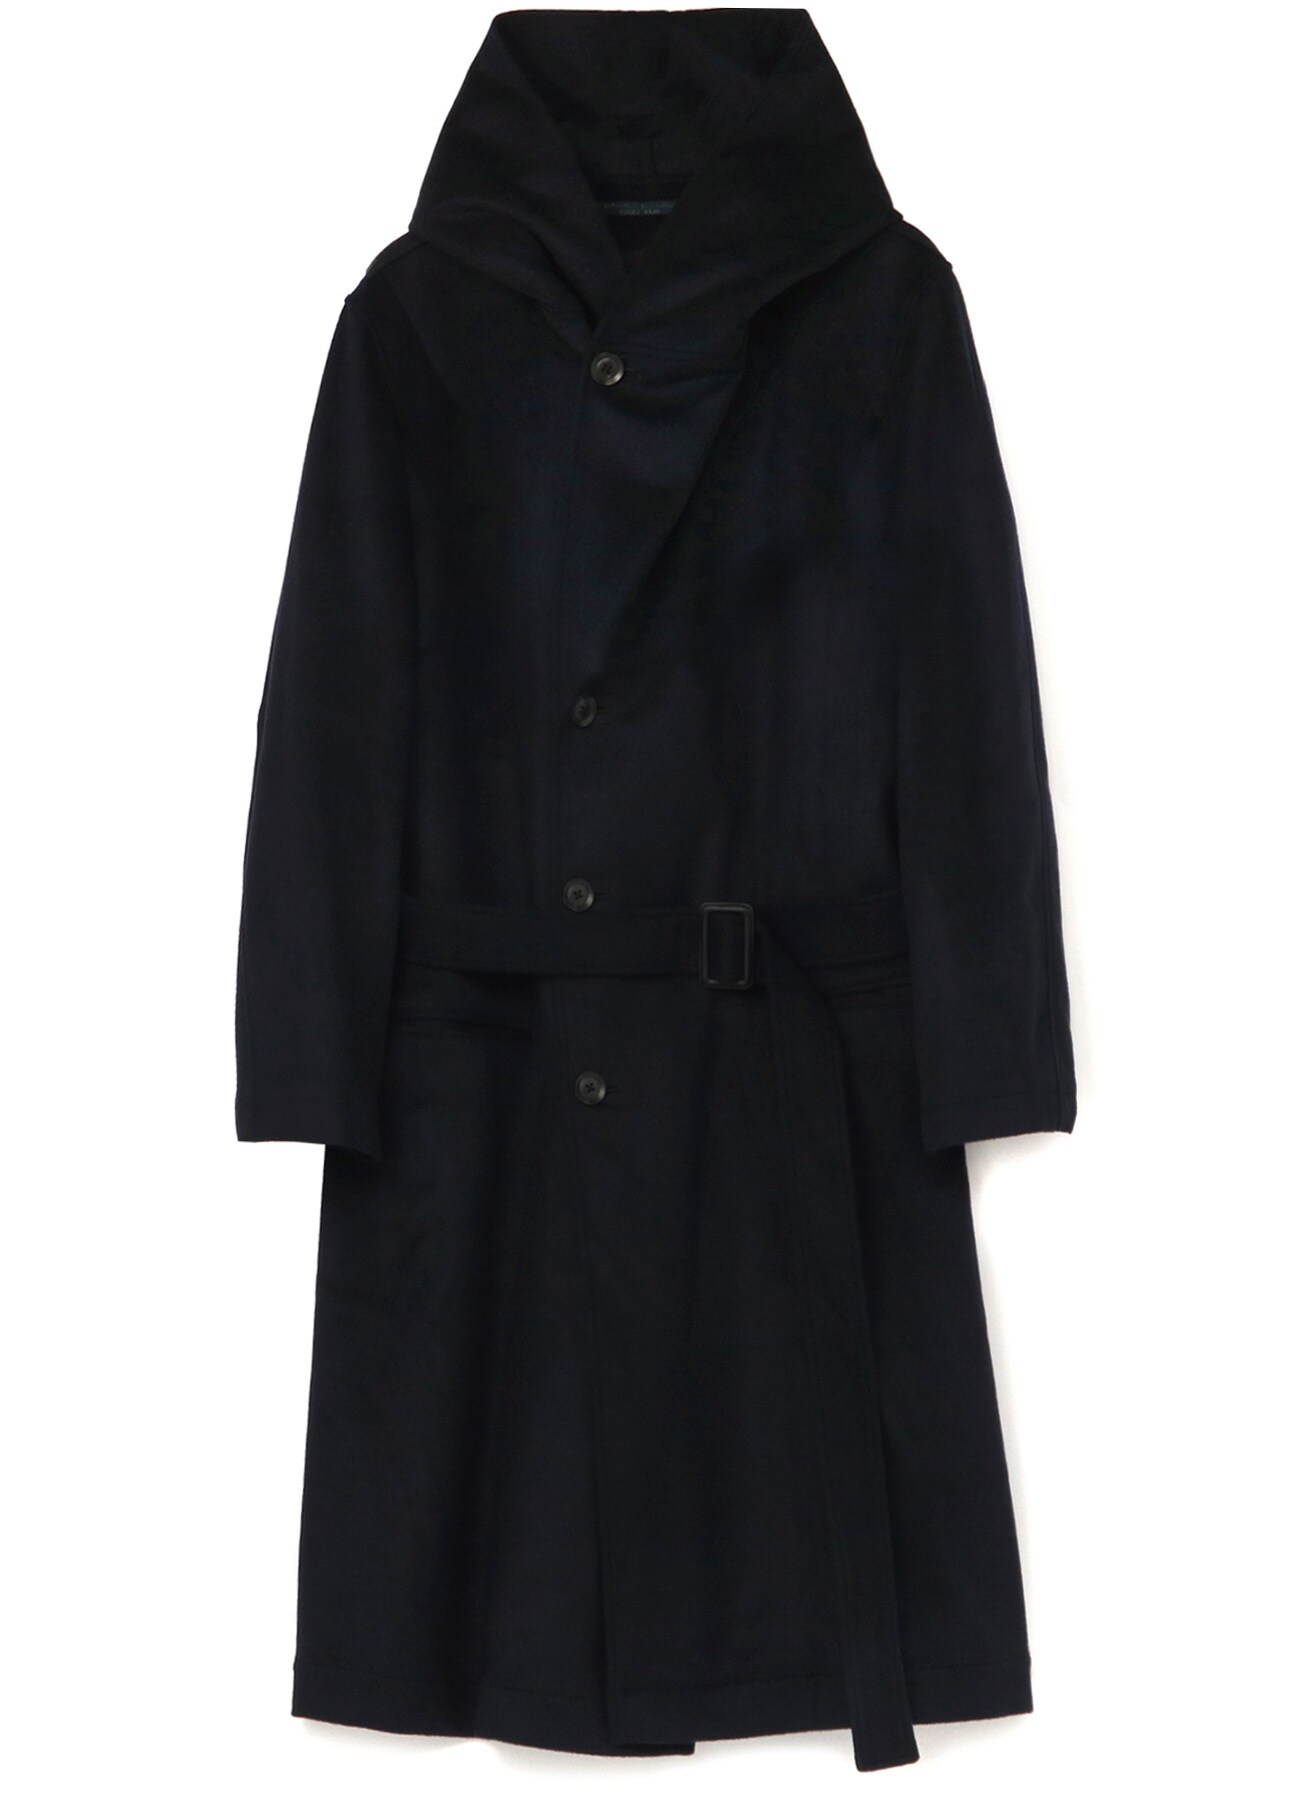 REGULATION Yohji Yamamoto Hooded Coat